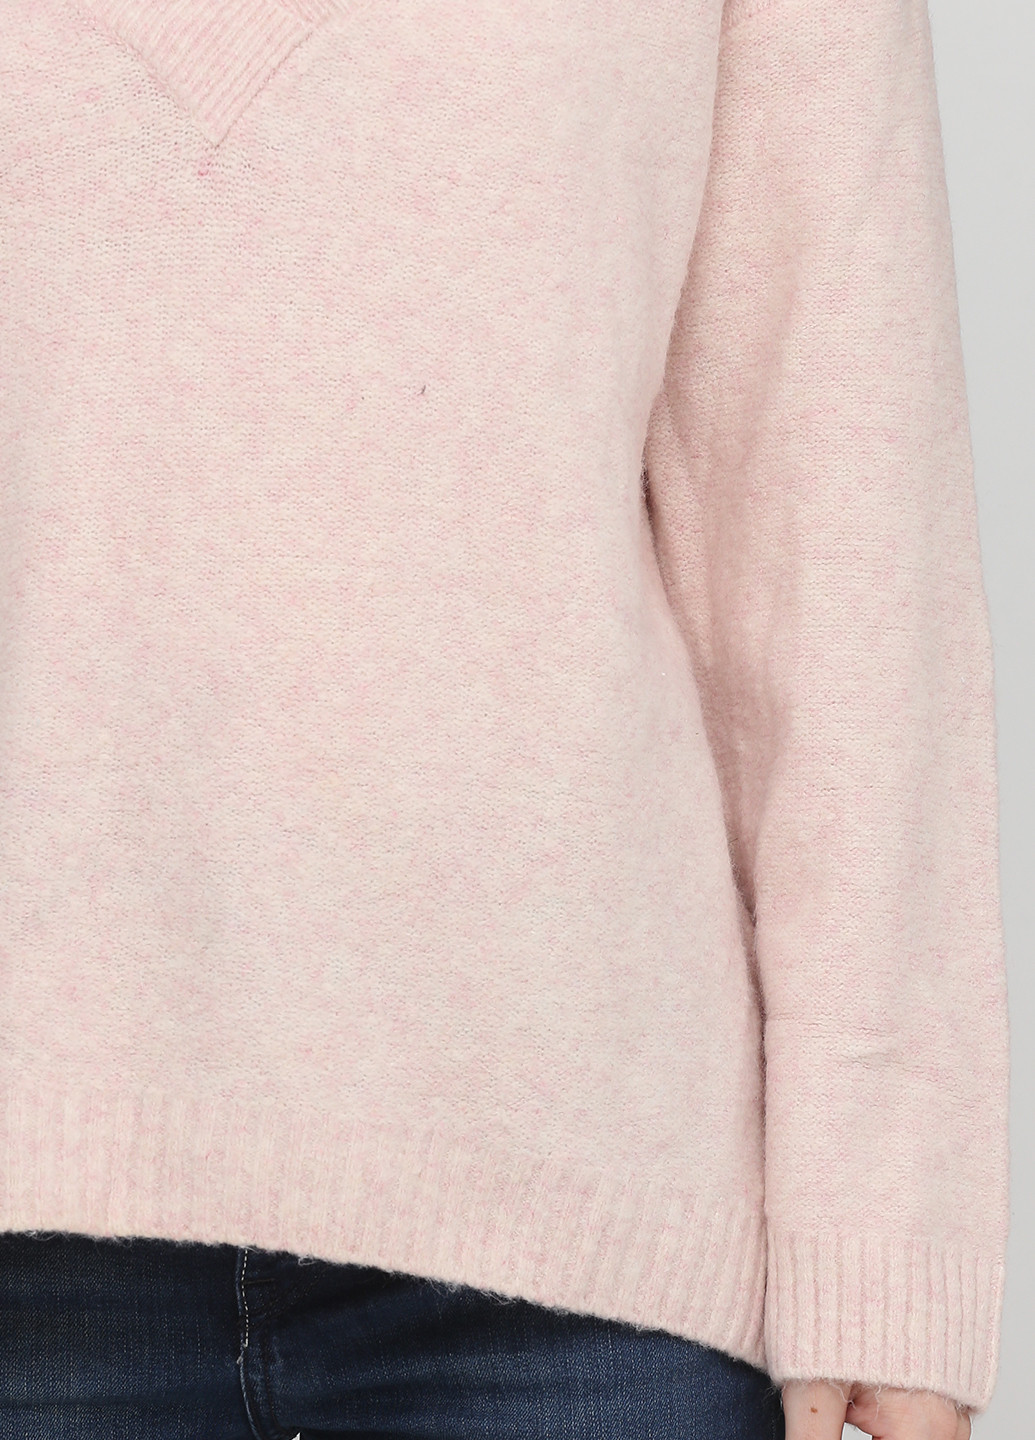 Светло-розовый демисезонный пуловер пуловер H&M